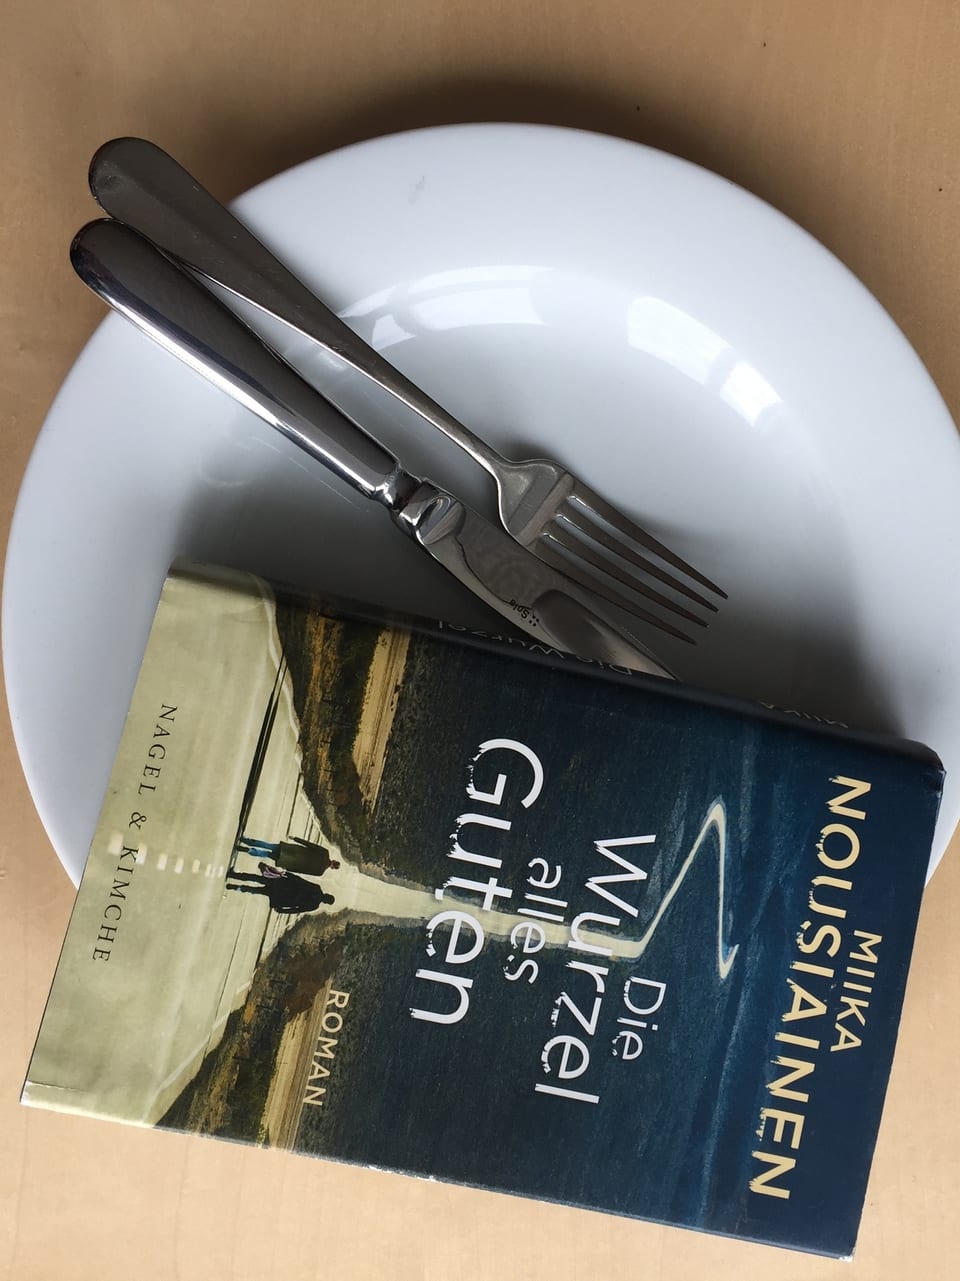 Miika Nousiainen: «Die Wurzel alles Guten» (2017, Nagel + Kimche) auf einem Teller